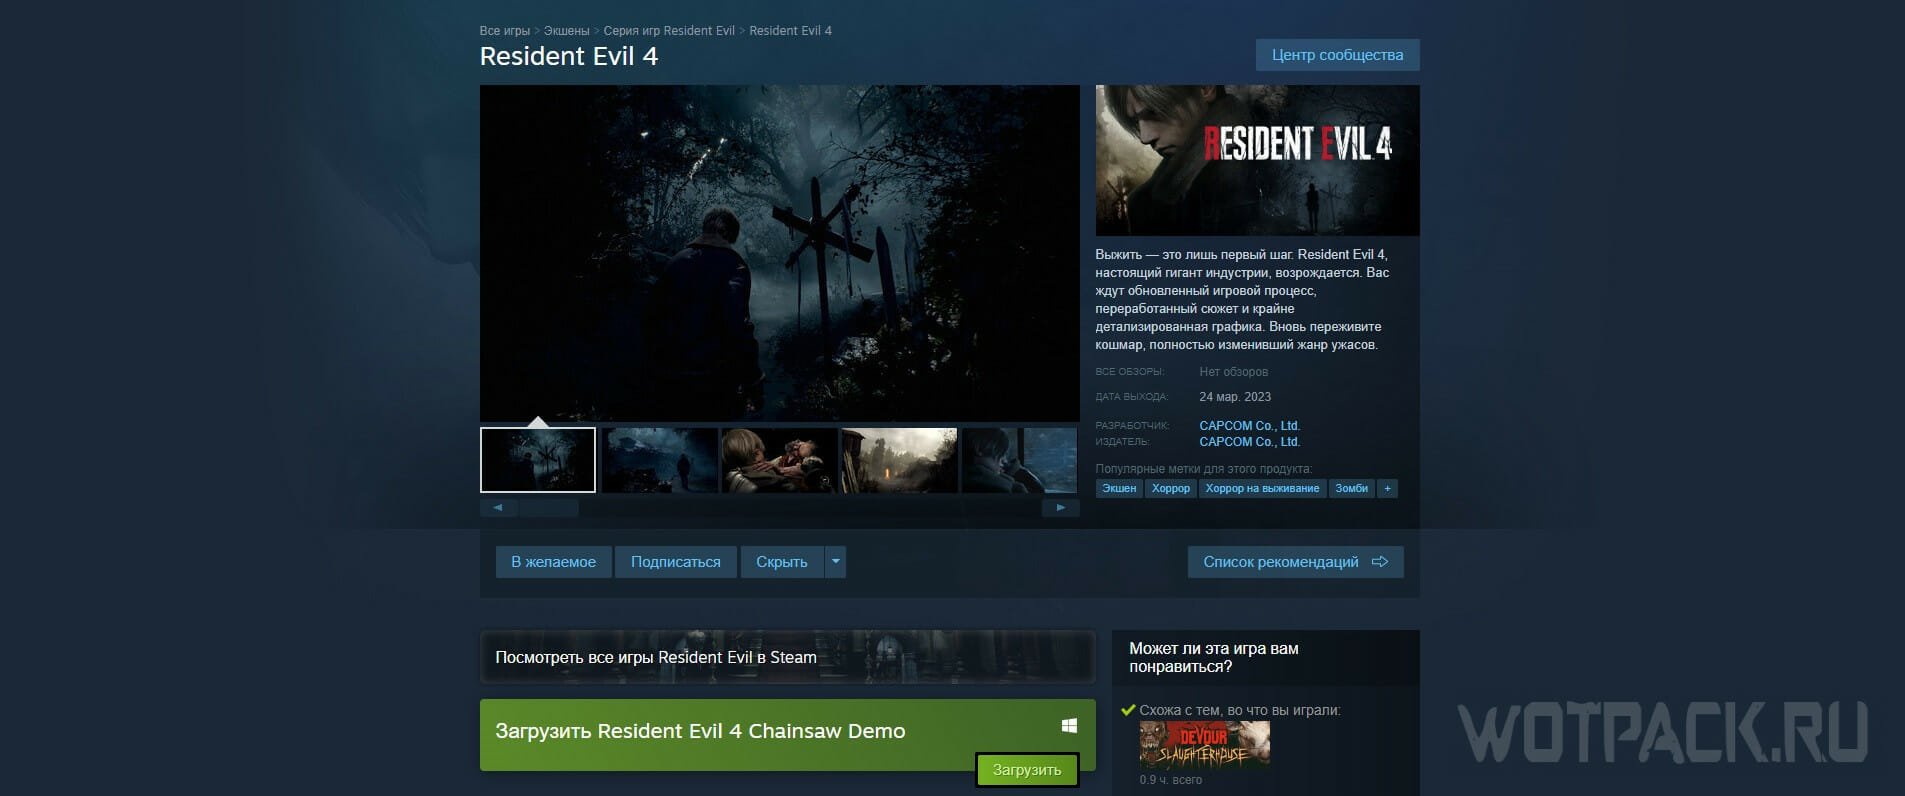 Graden Celsius plaats Catena Resident Evil 4 Remake kopen in Rusland op pc, PS4/PS5 en Xbox